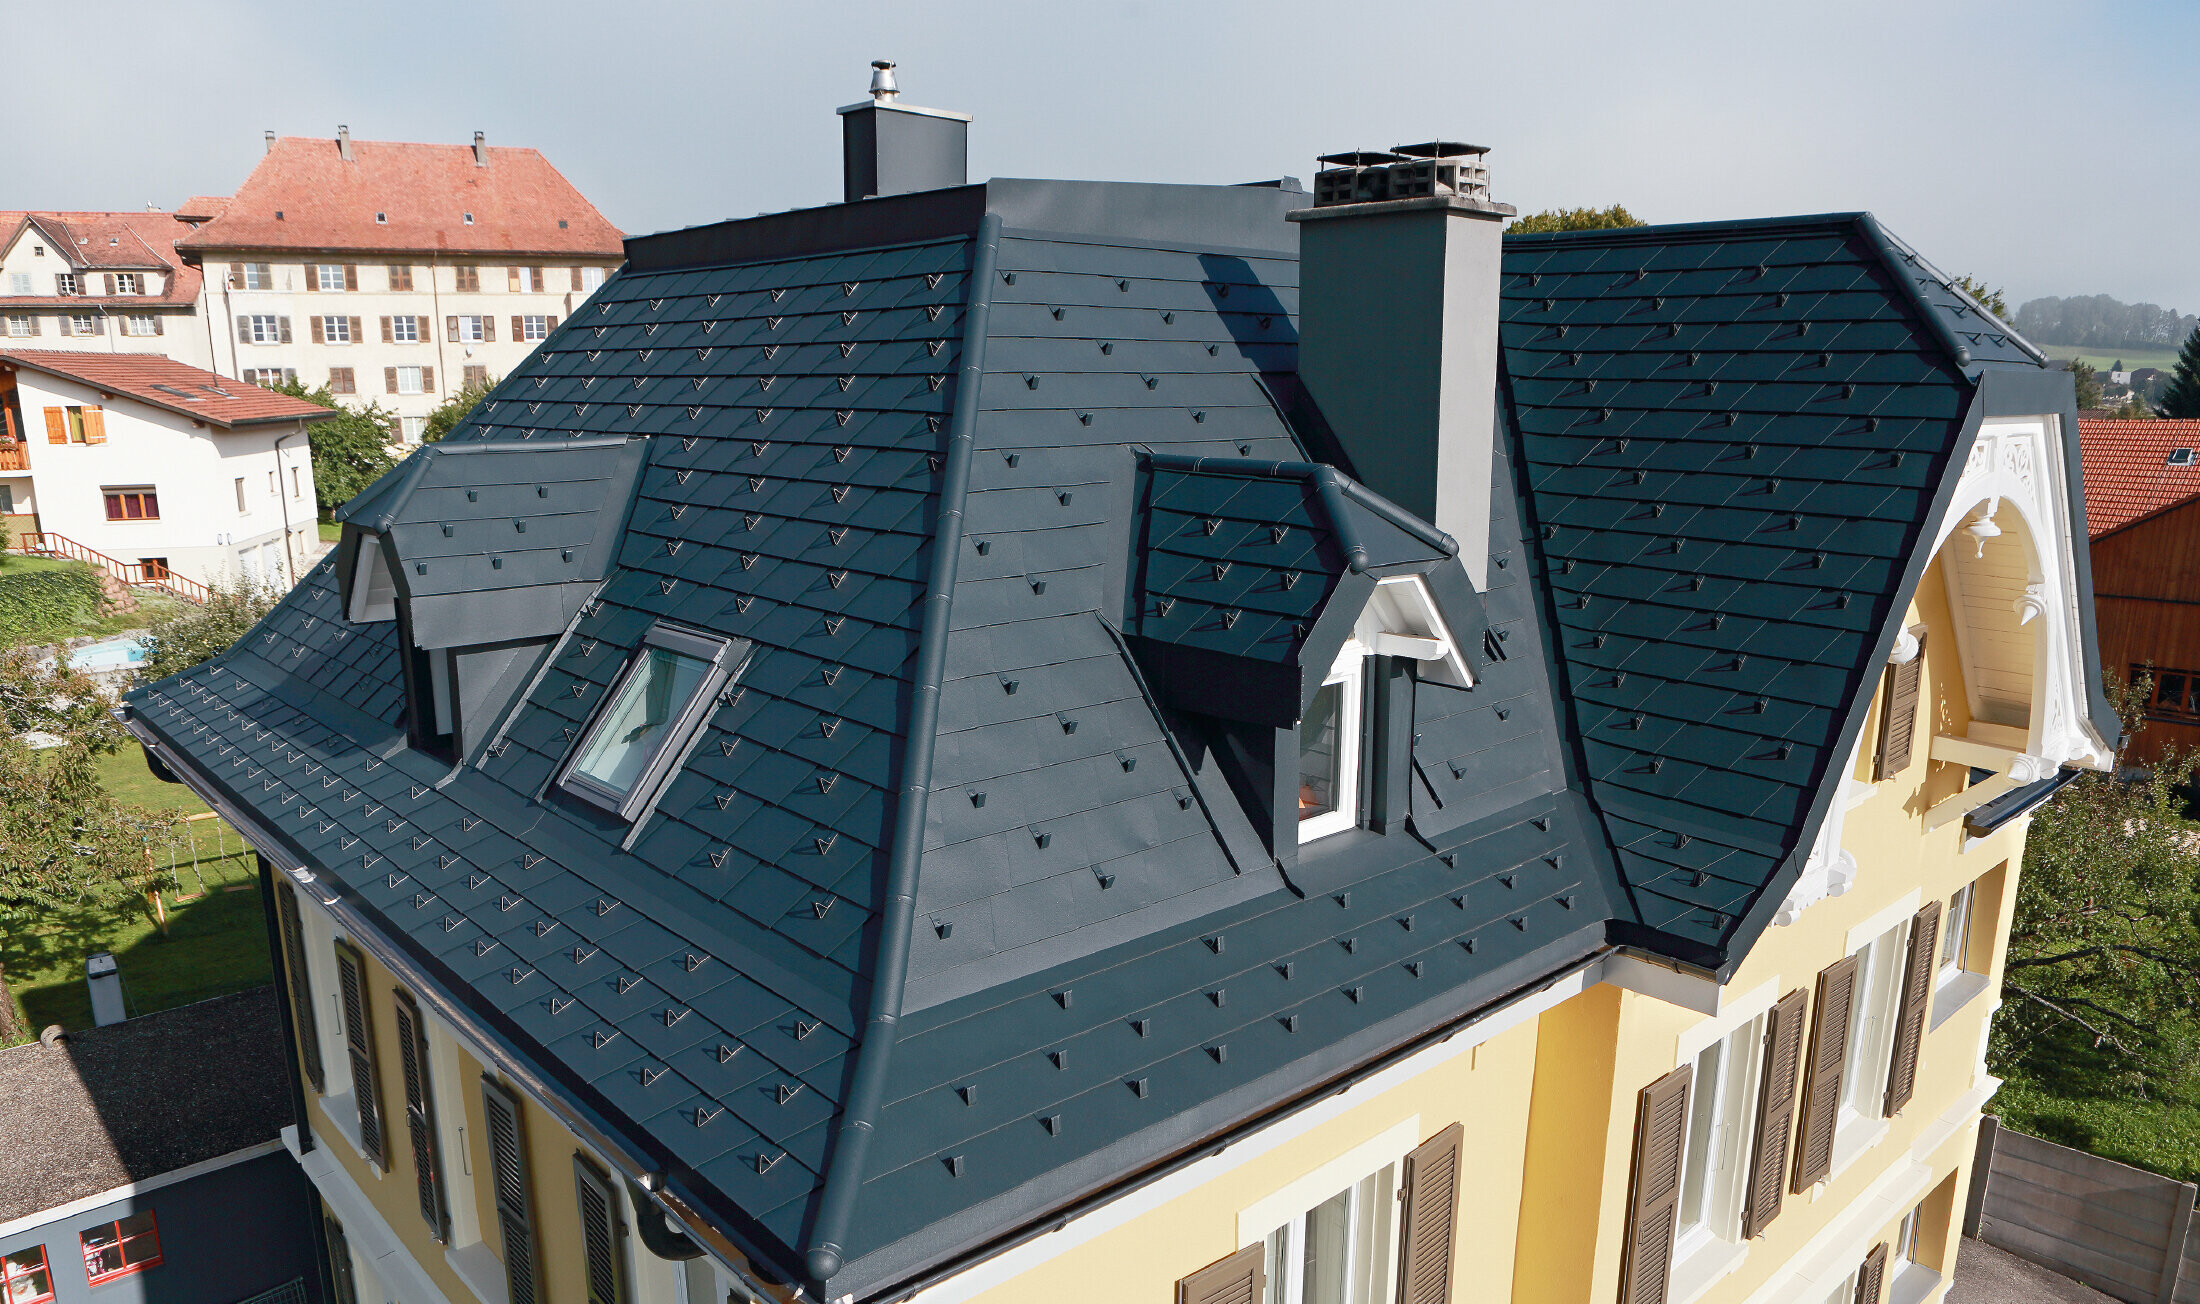 Vila ve Švýcarsku, s mnoha úžlabími a malými vikýři ve střeše; střecha je pokrytá hliníkovým PREFA falcovaným šindelem v barvě P.10 antracitové